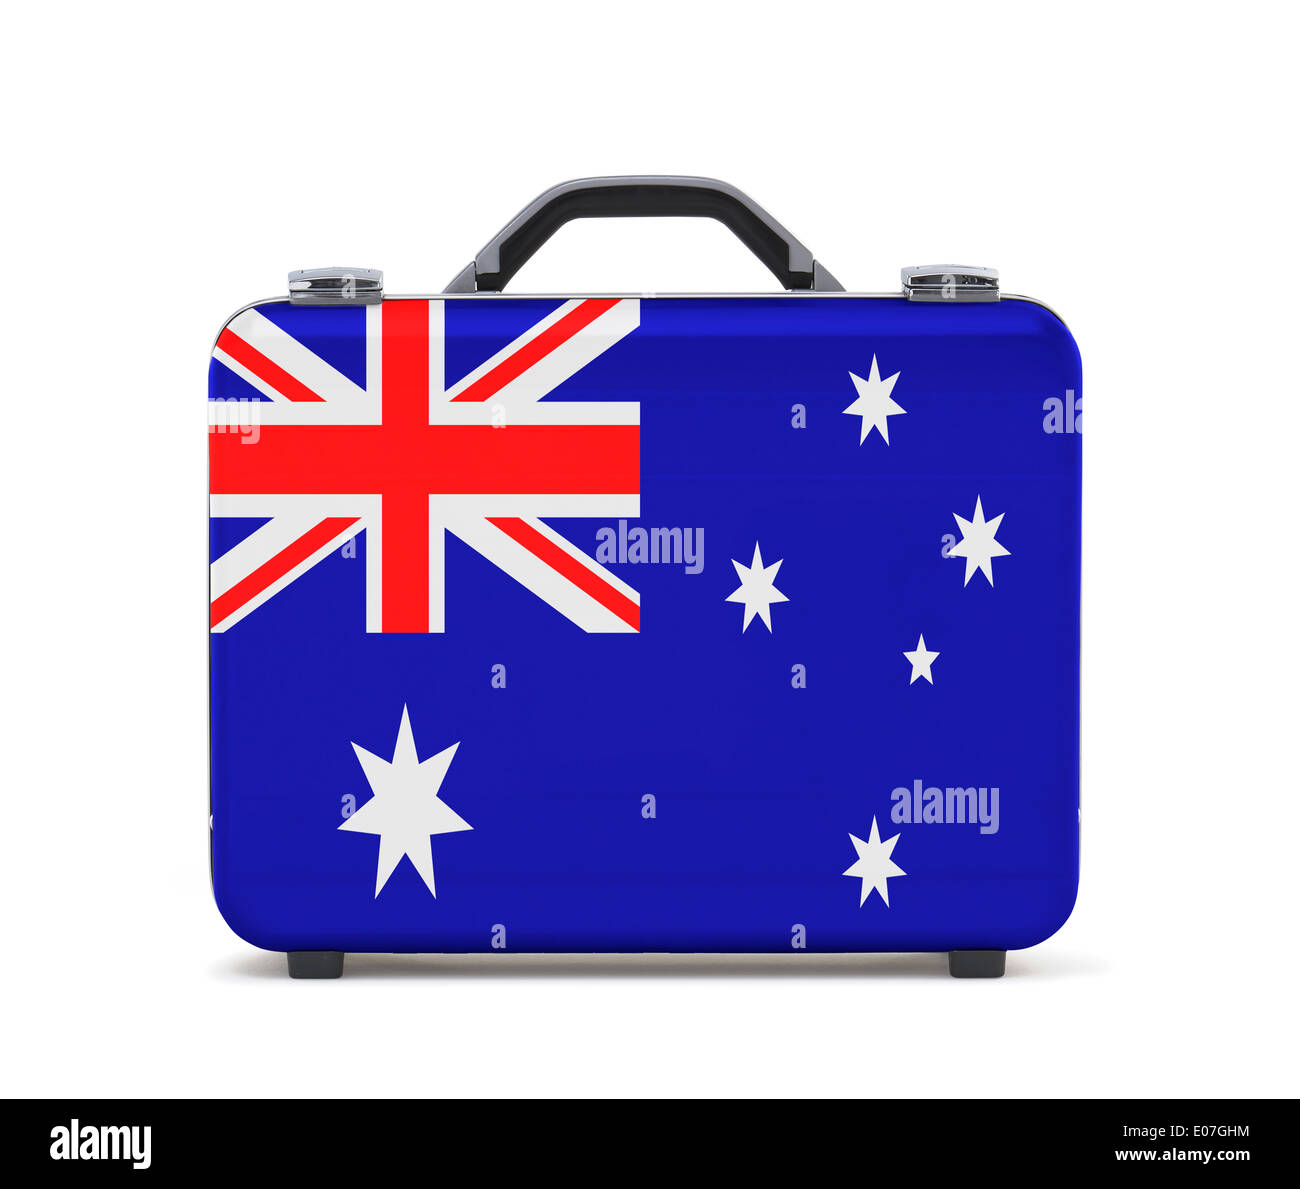 Business-Koffer für die Reise mit Flagge von Australien Stockfotografie -  Alamy